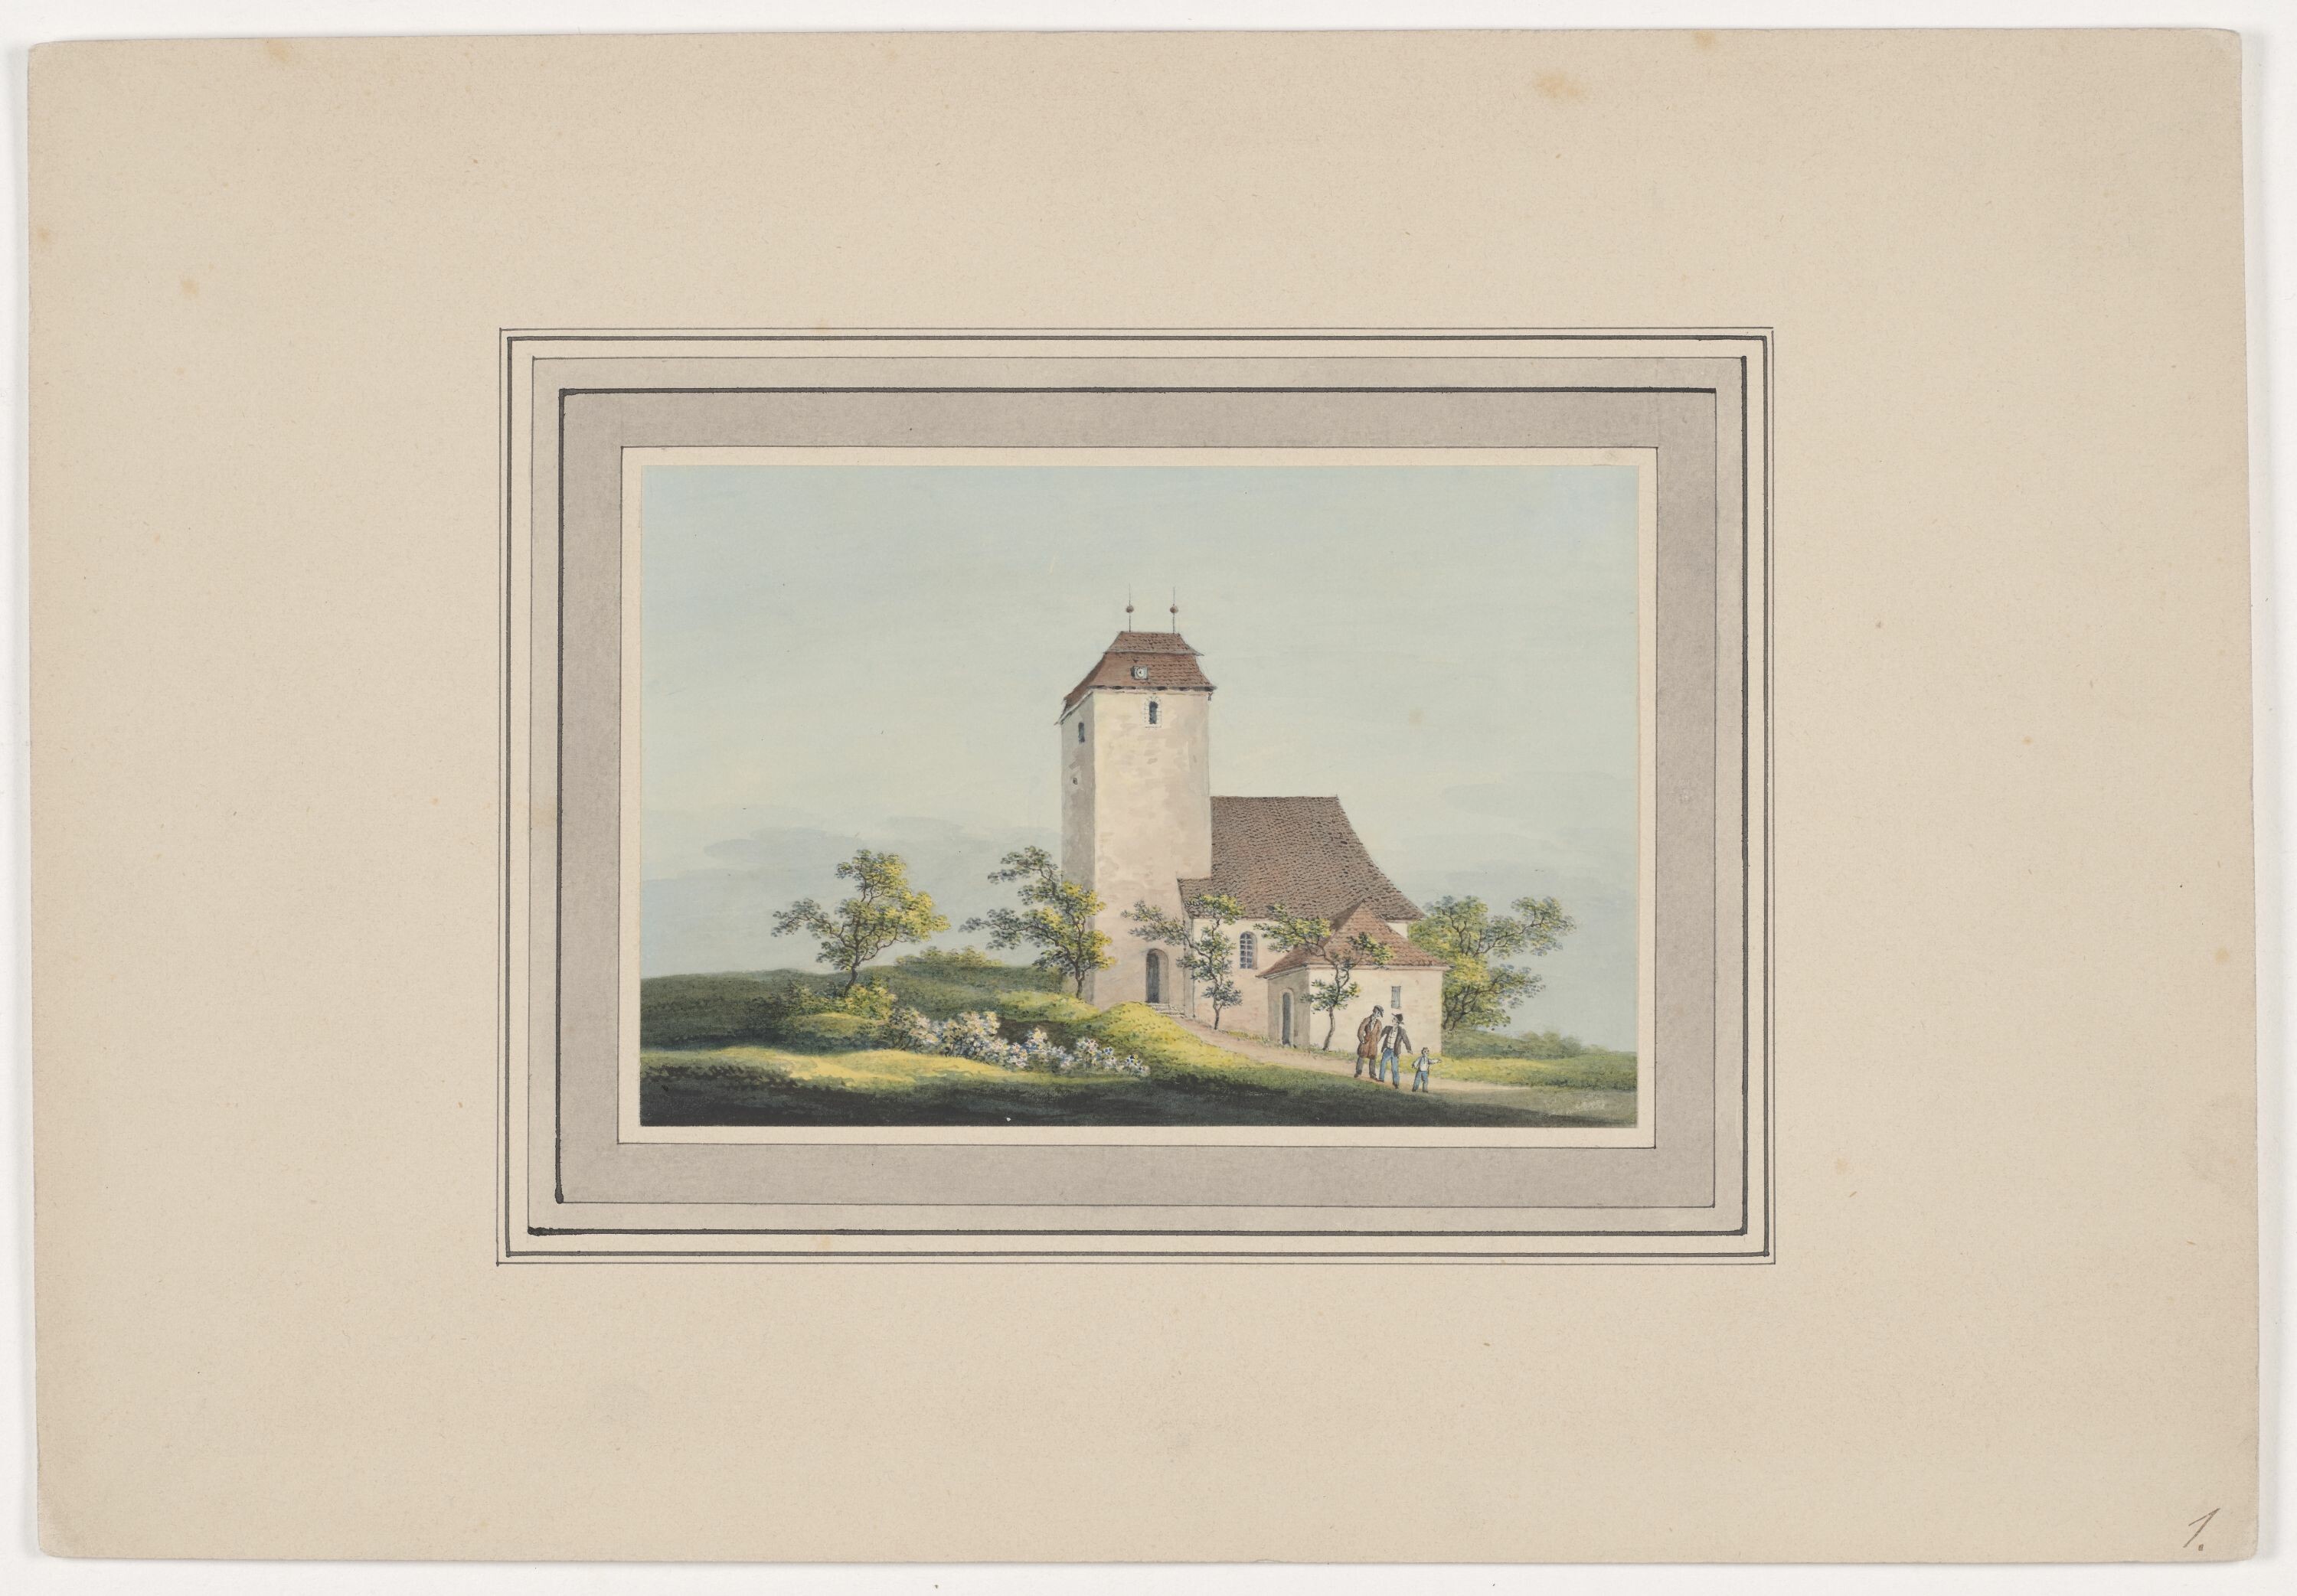 Kirche zu Rottmannsdorf, aus Mappe: Dorfkirchen der Ephorie Zwickau, Blatt 1 (KUNSTSAMMLUNGEN ZWICKAU Max-Pechstein-Museum RR-F)